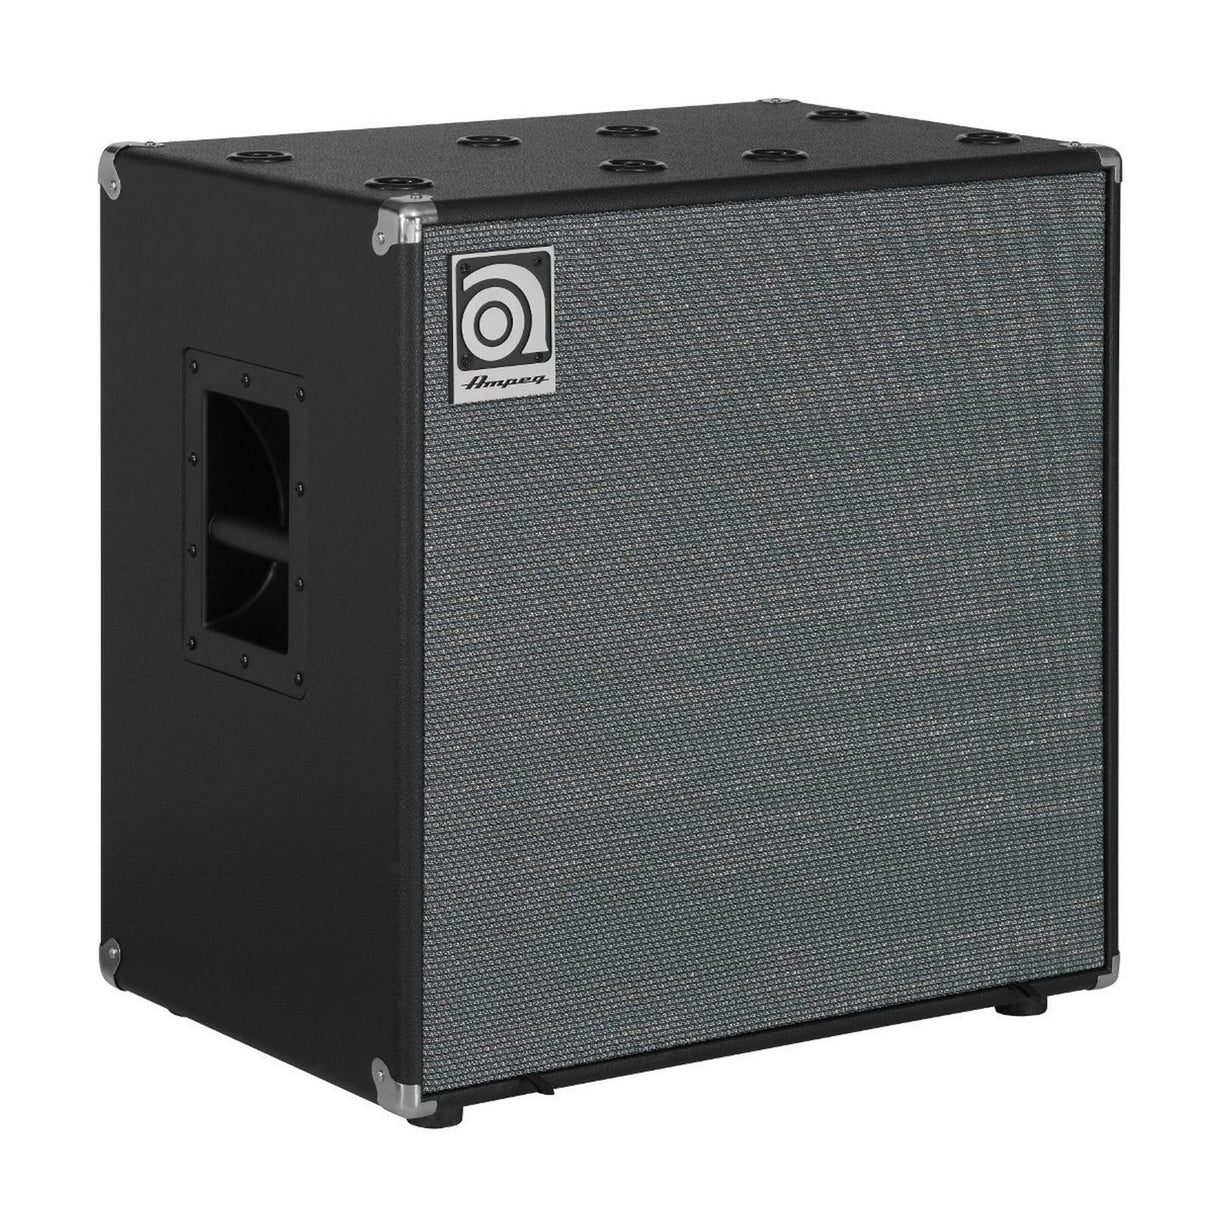 Ampeg SVT-212AV 2 x 12 Inch Bass Amp Cabinet